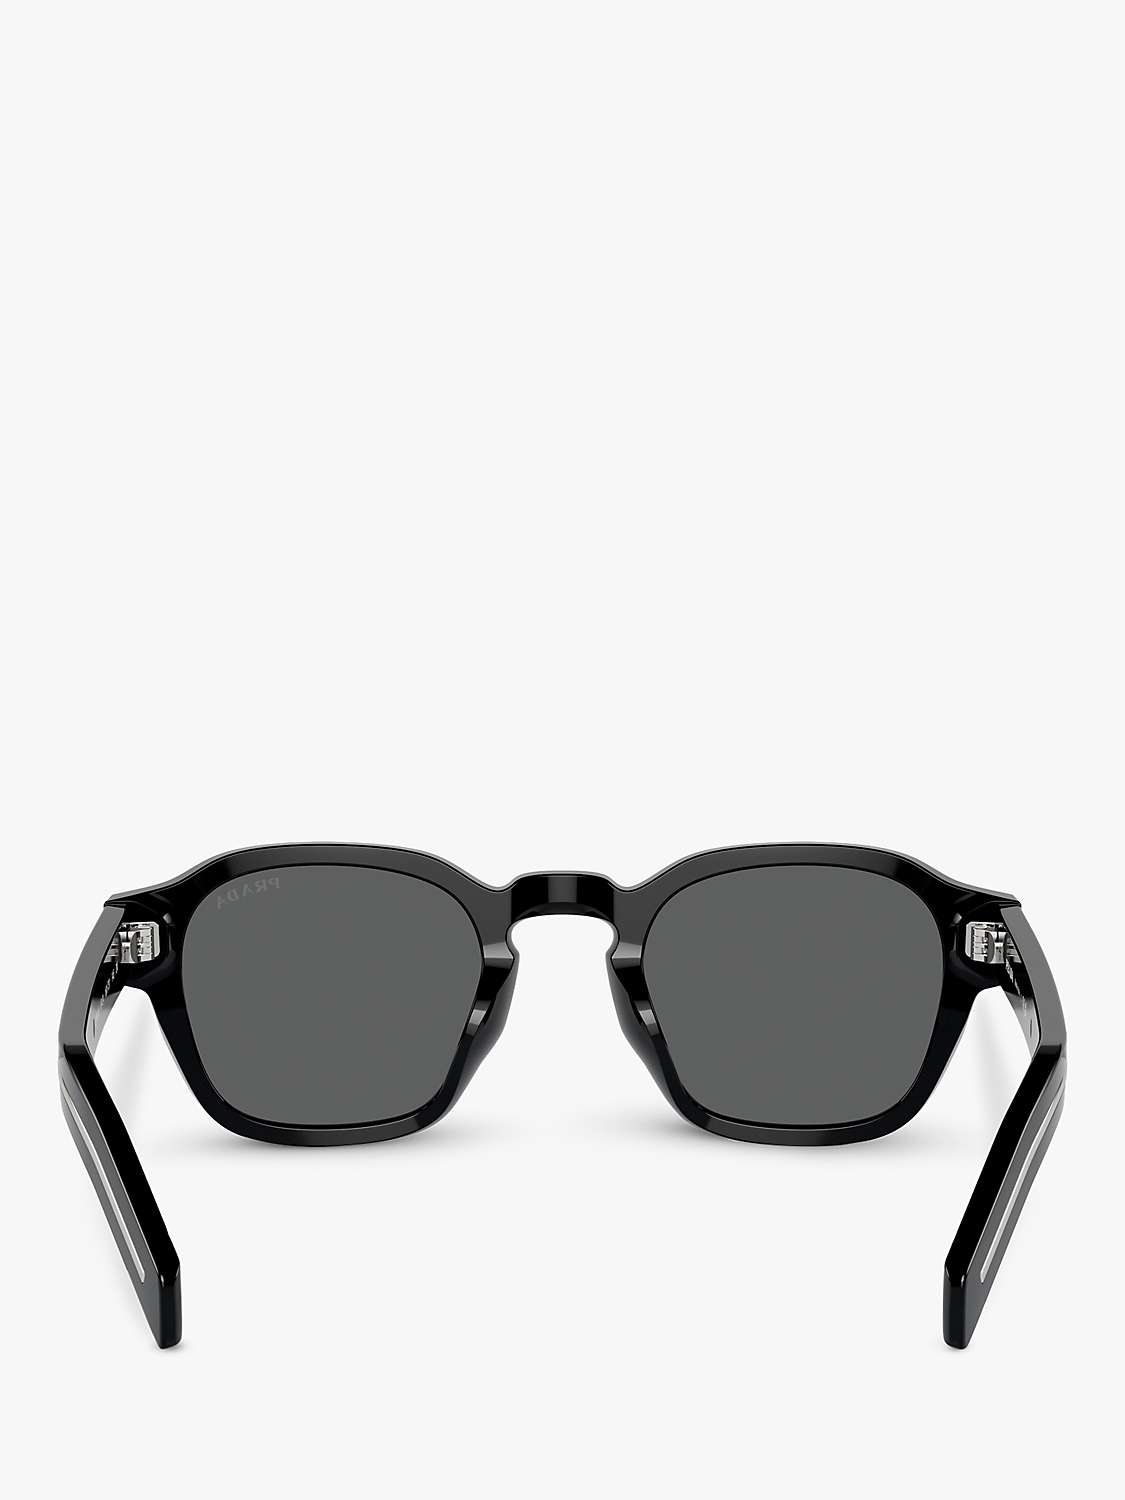 Buy Prada PR A16S Men's Phantos Sunglasses, Black/Grey Online at johnlewis.com